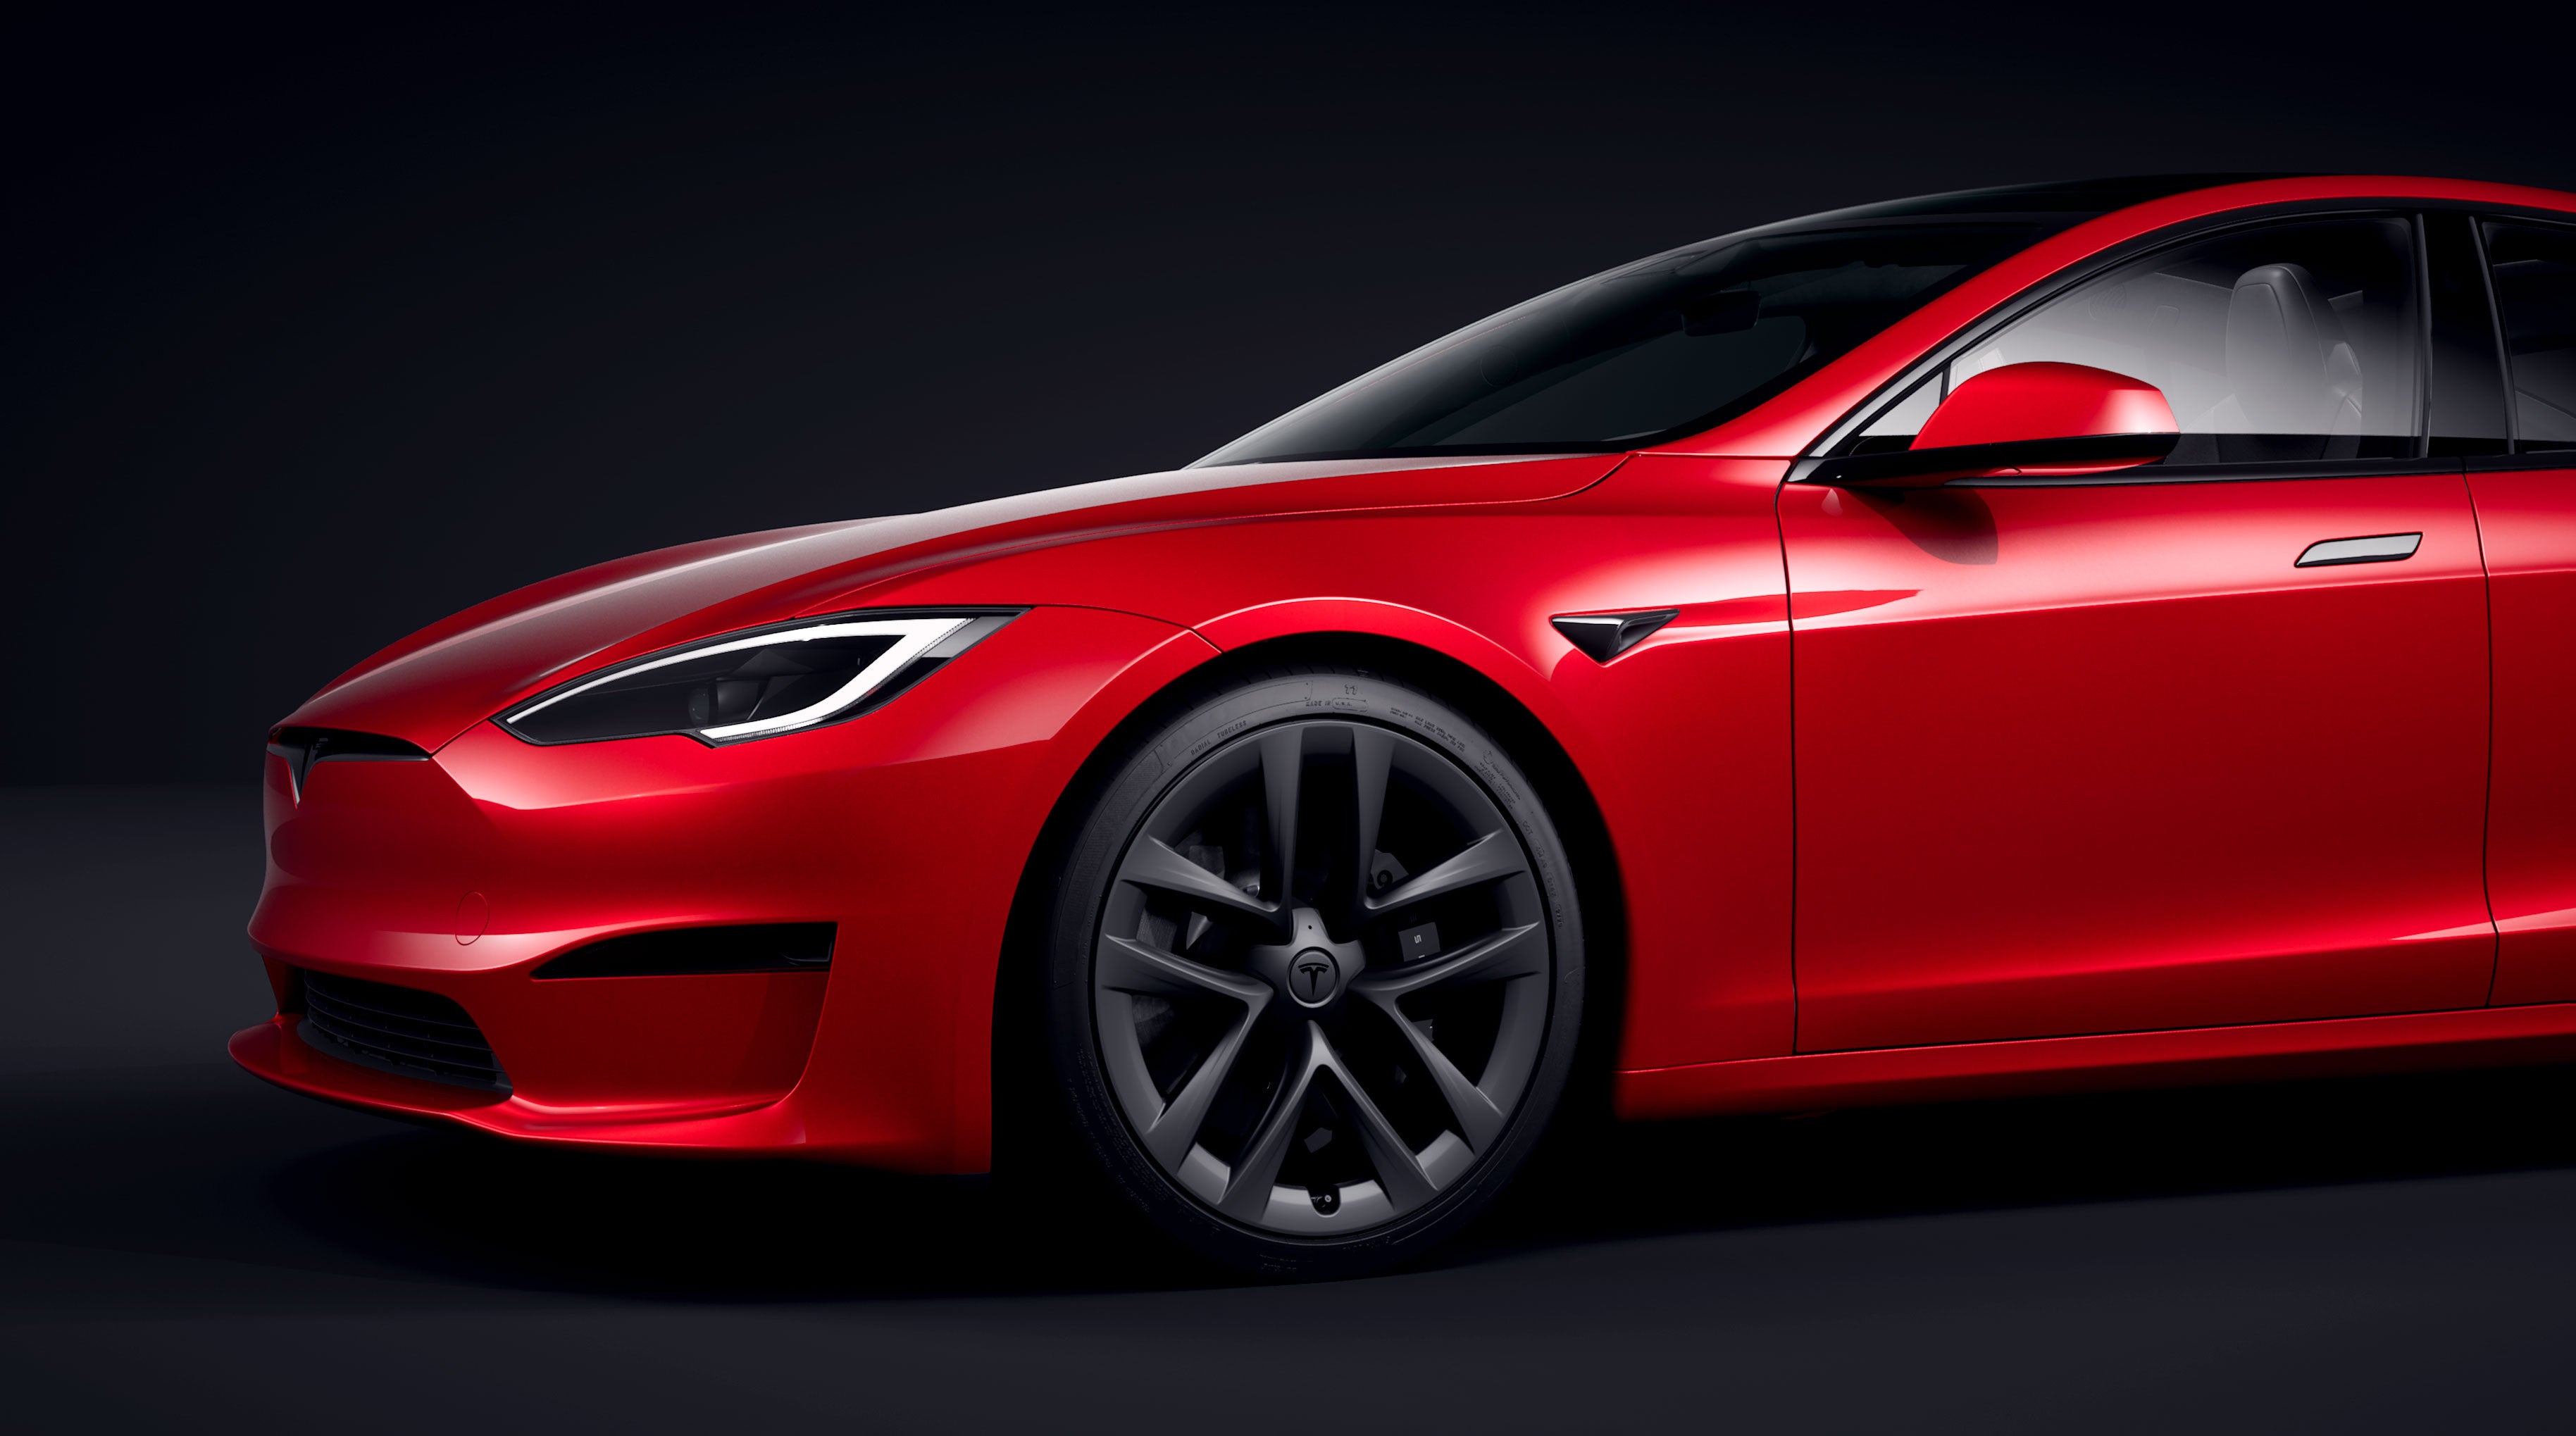 Populært tilbehør og udstyr i høj kvalitet til alle Tesla modeller